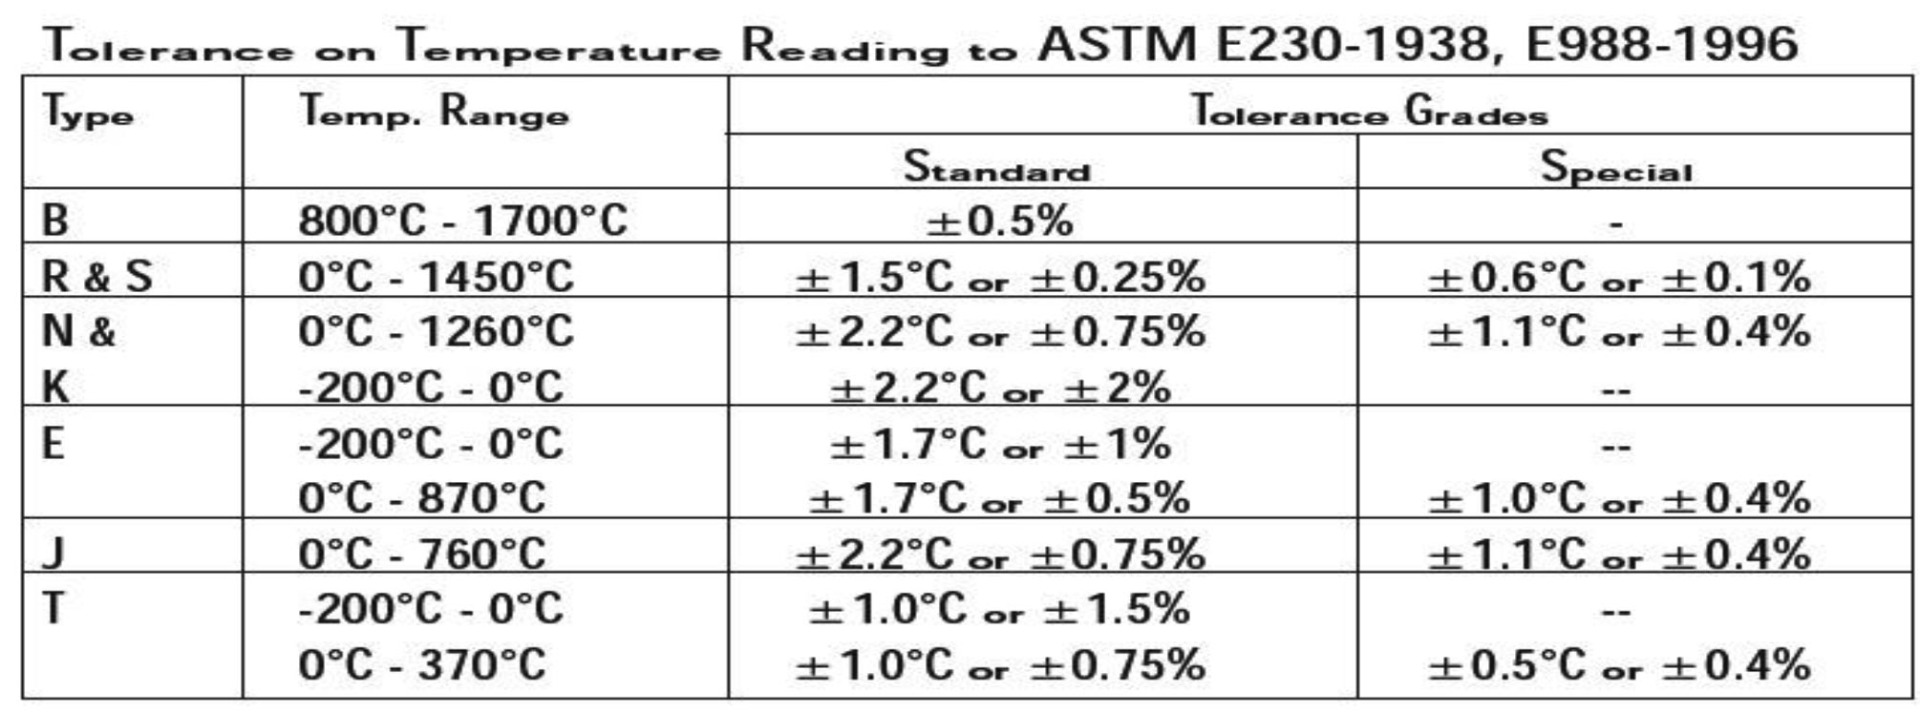 Tolerances On Temperature Reading 